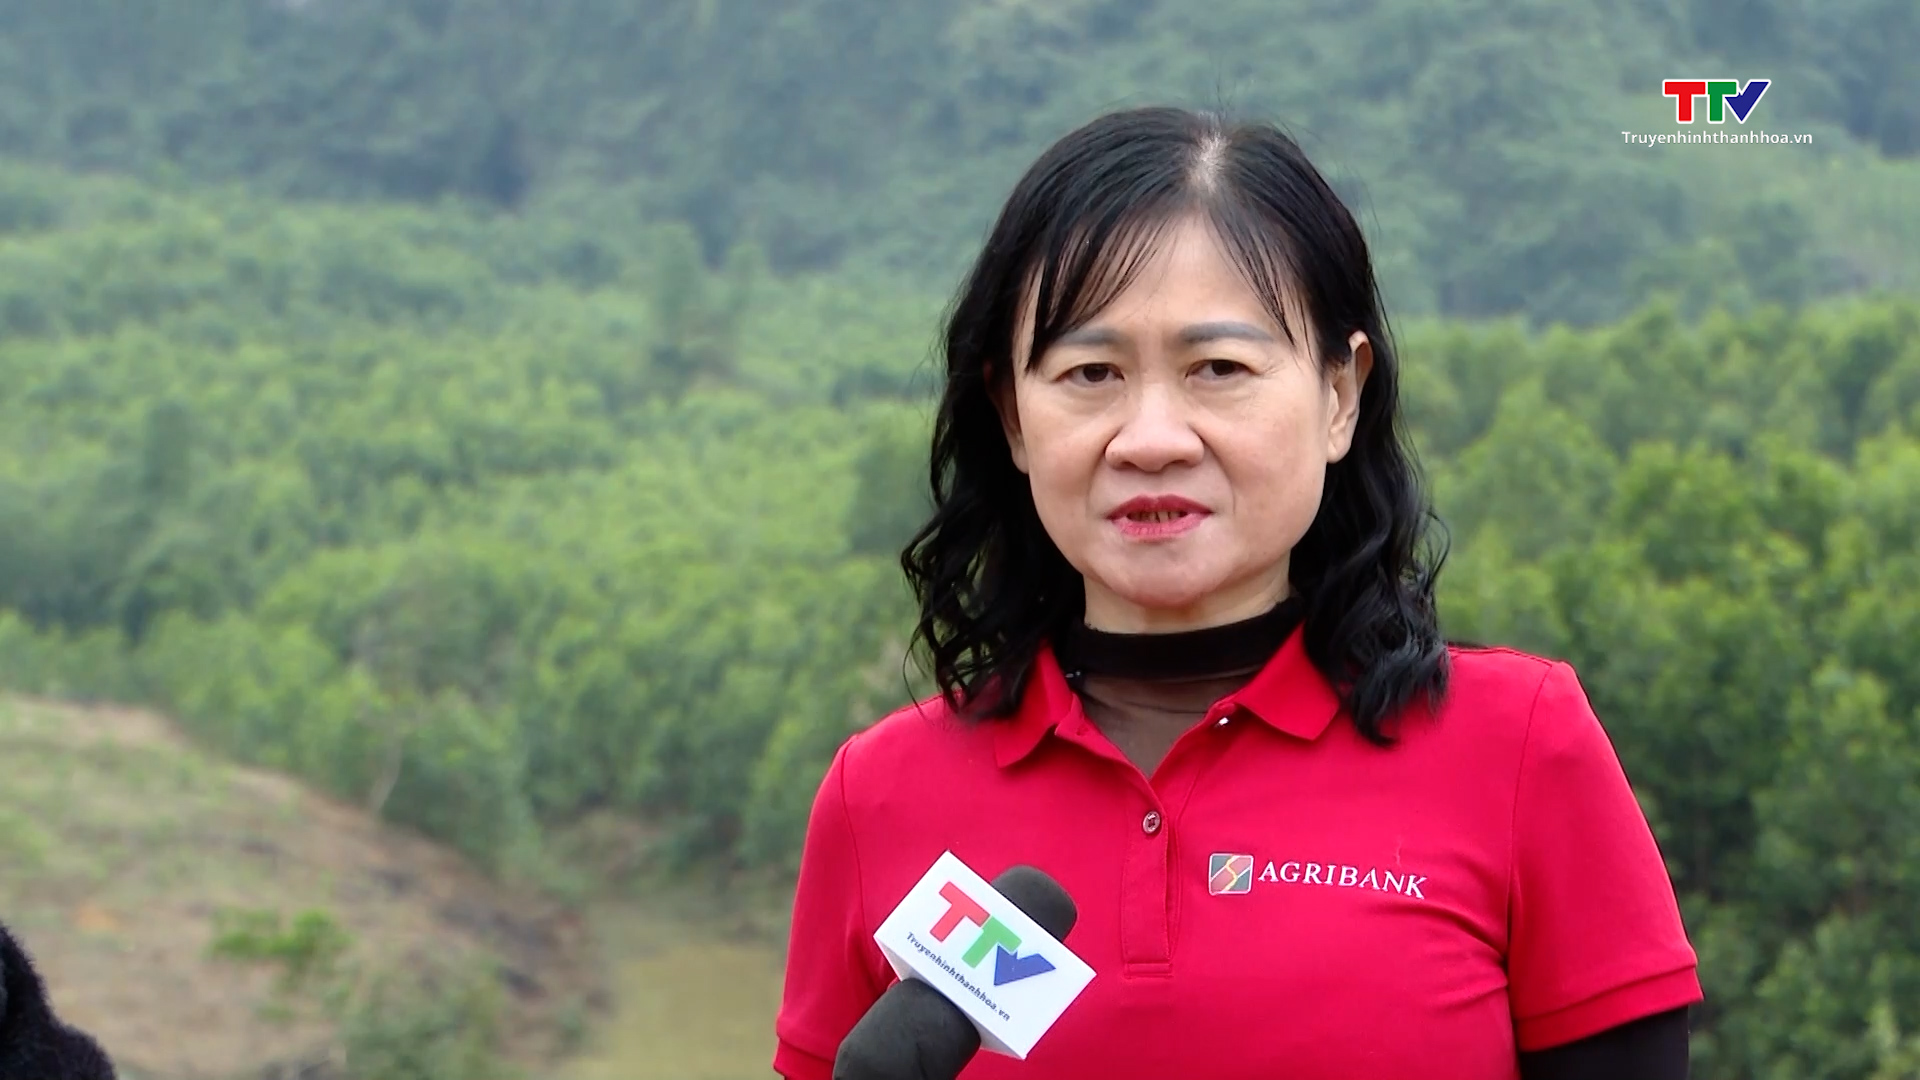 Agribank Nam Thanh Hoá thực hiện tốt công tác an sinh xã hội - Ảnh 4.